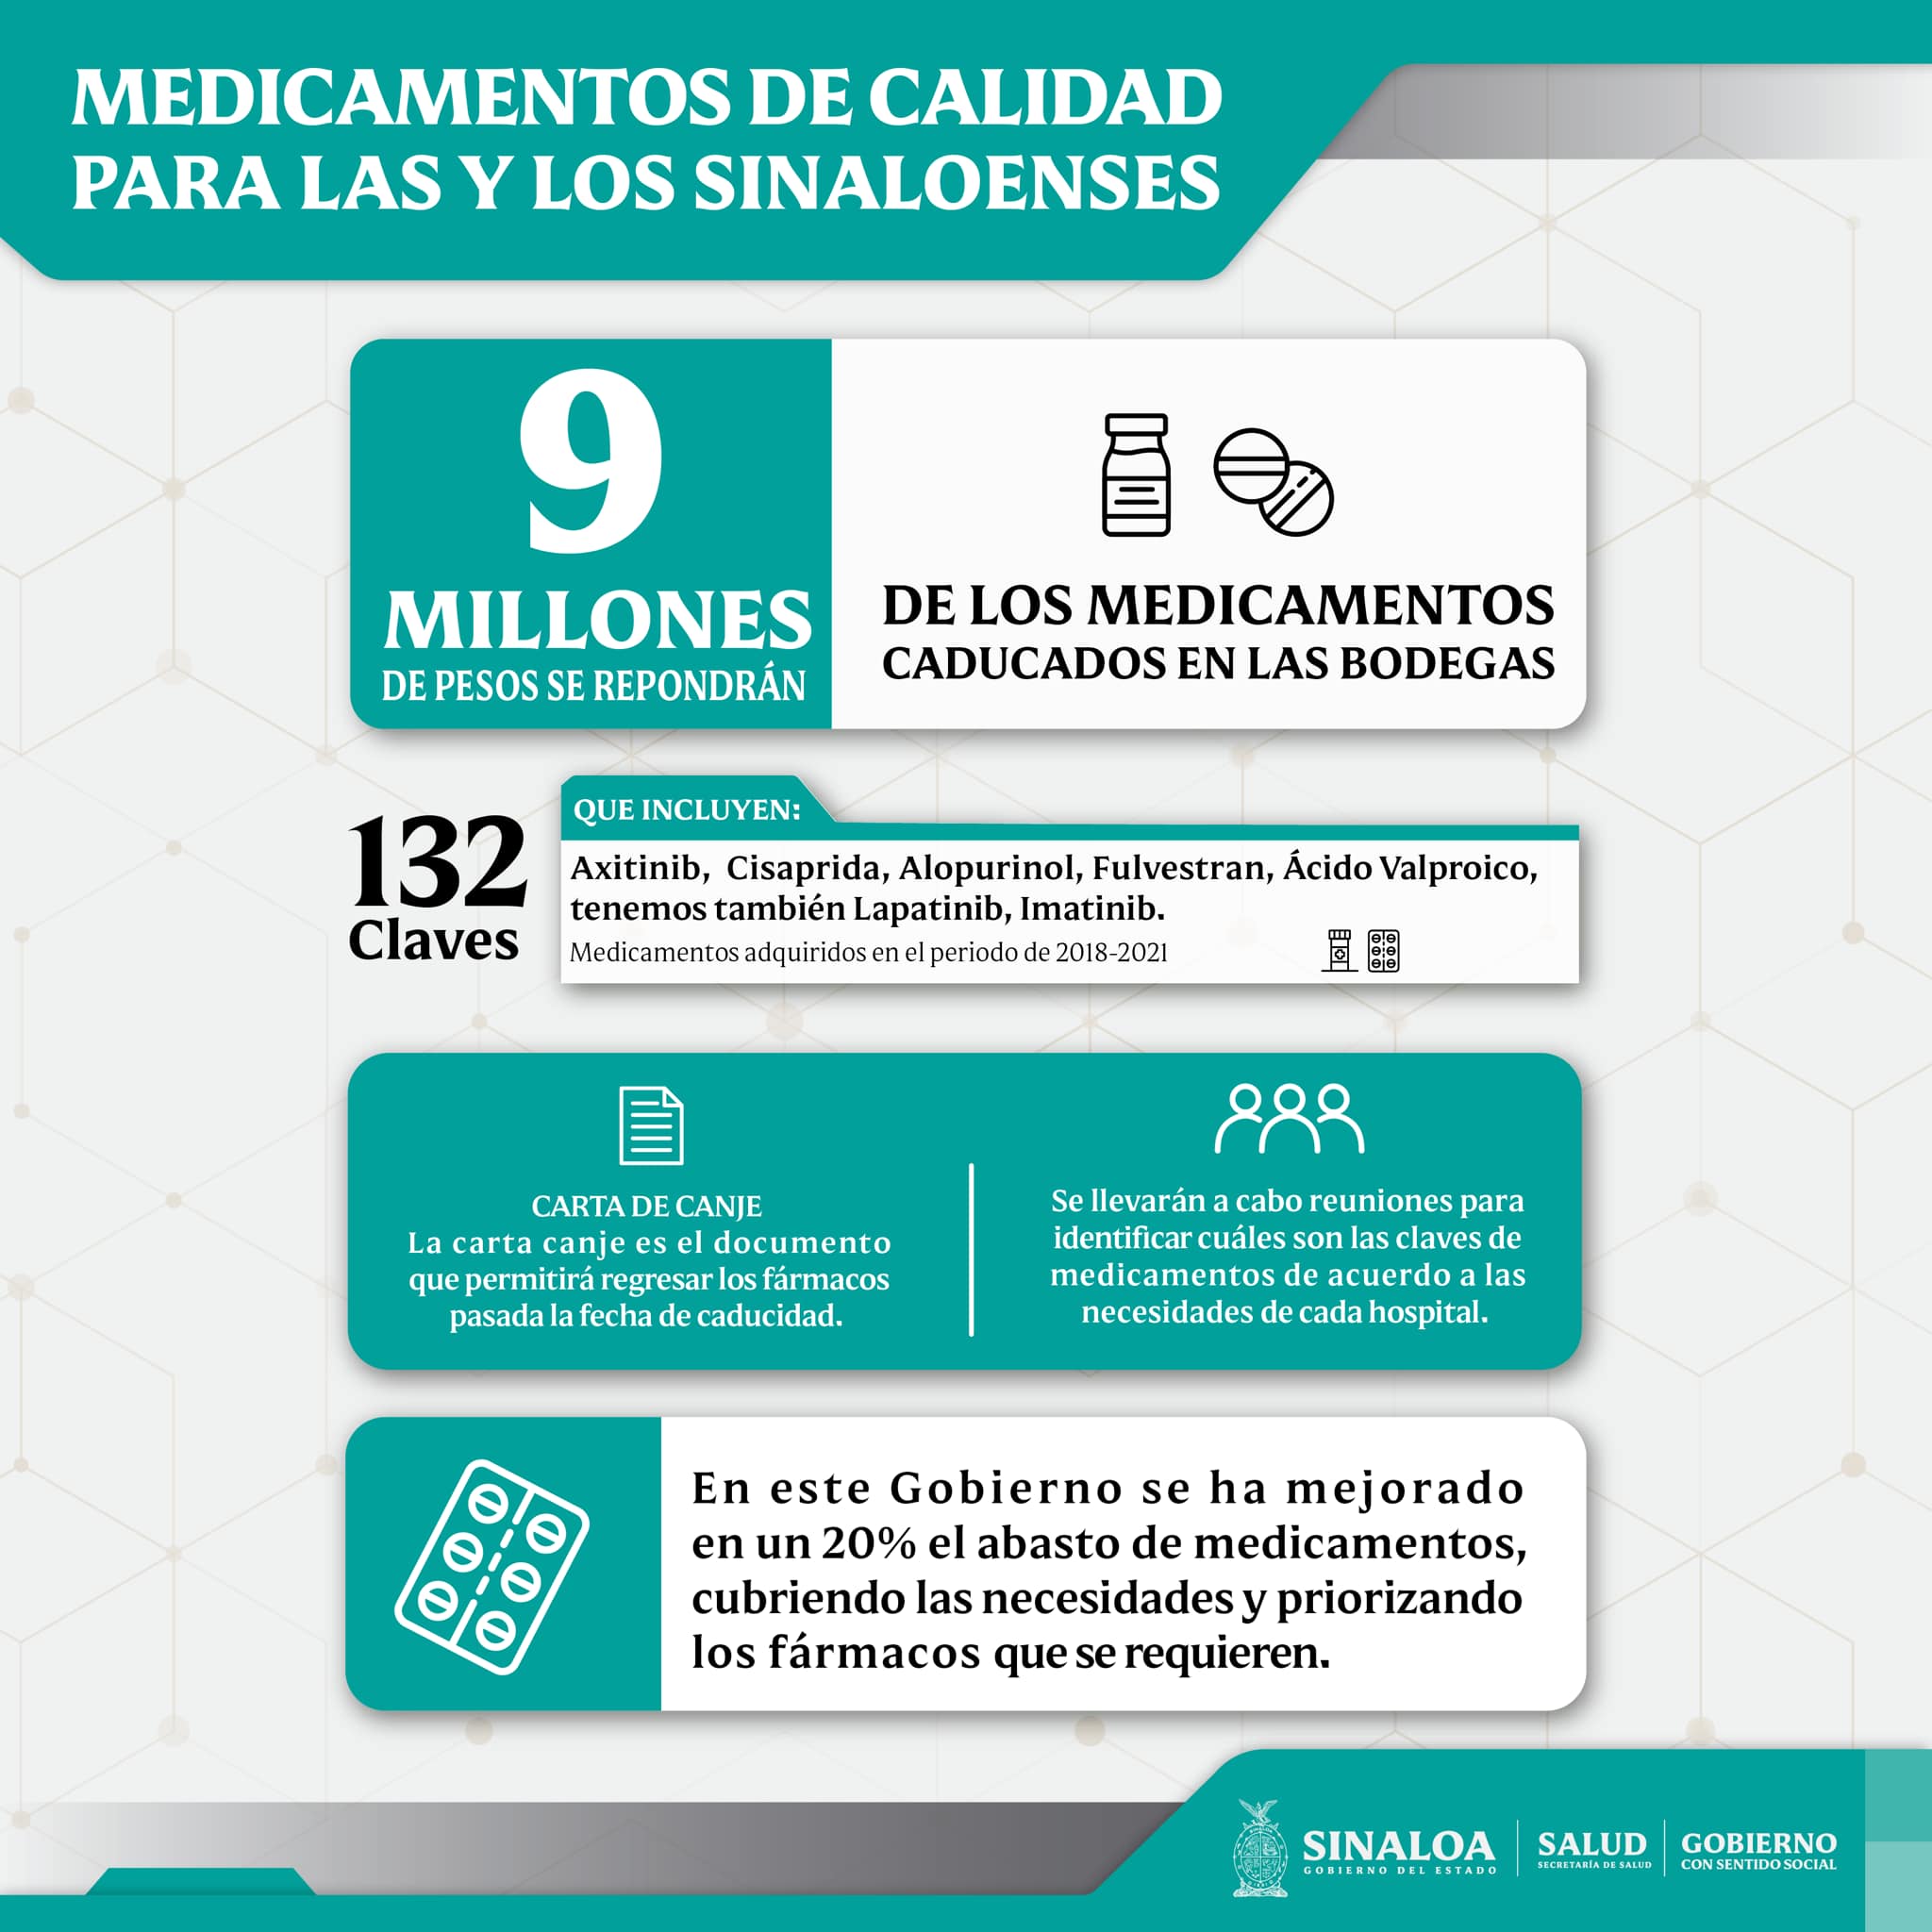 A pesar de la pérdida millonaria por los medicamentos caducados, el secretario de Salud de Sinaloa aseguró que el abasto de insumos ha mejorado en un 20% (Foto: Facebook / sinaloagobmx)